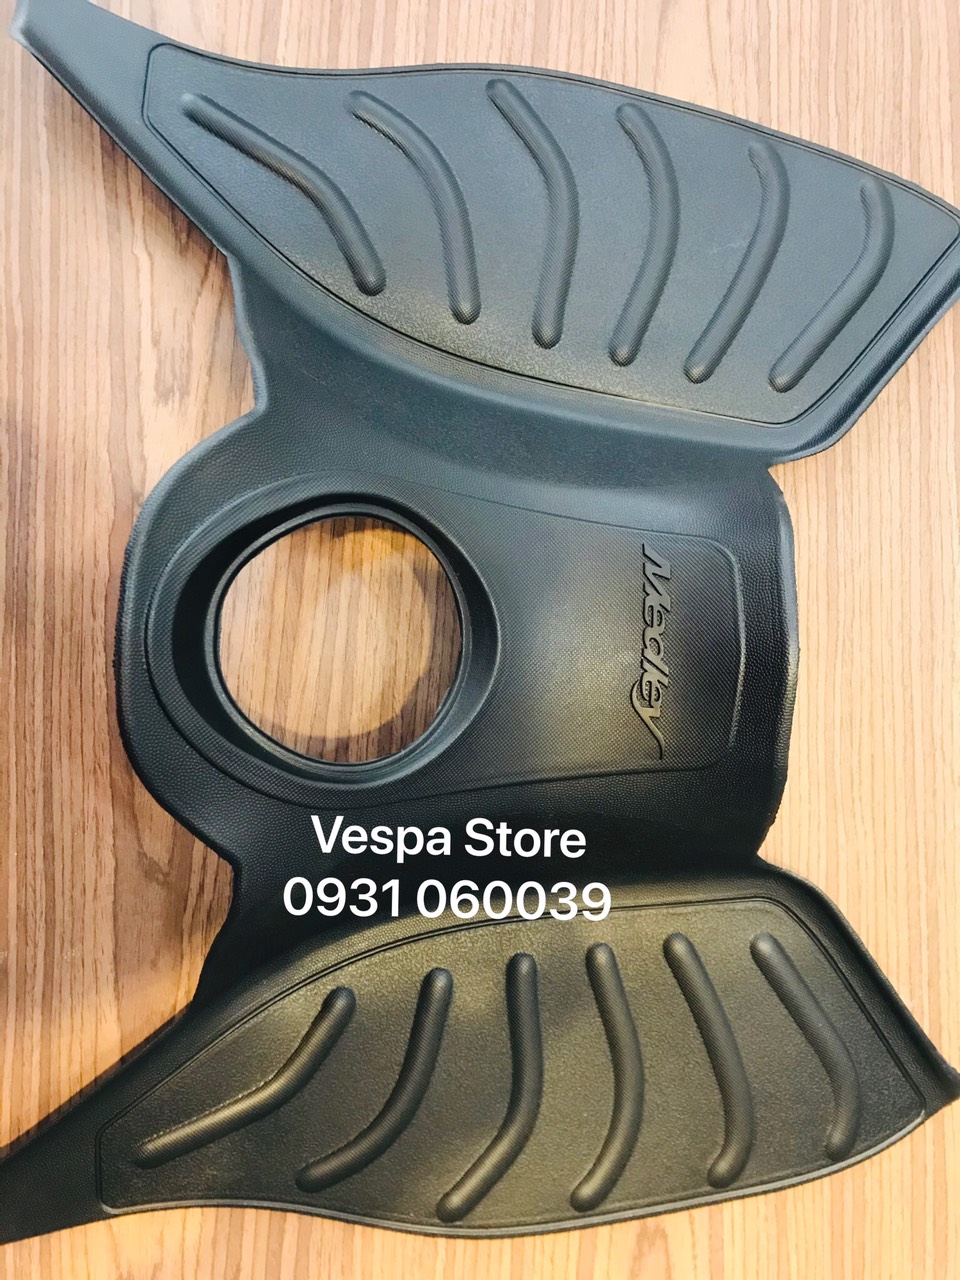 THẢM LÓT SÀN GTS cho Vespa 602734m Vespa